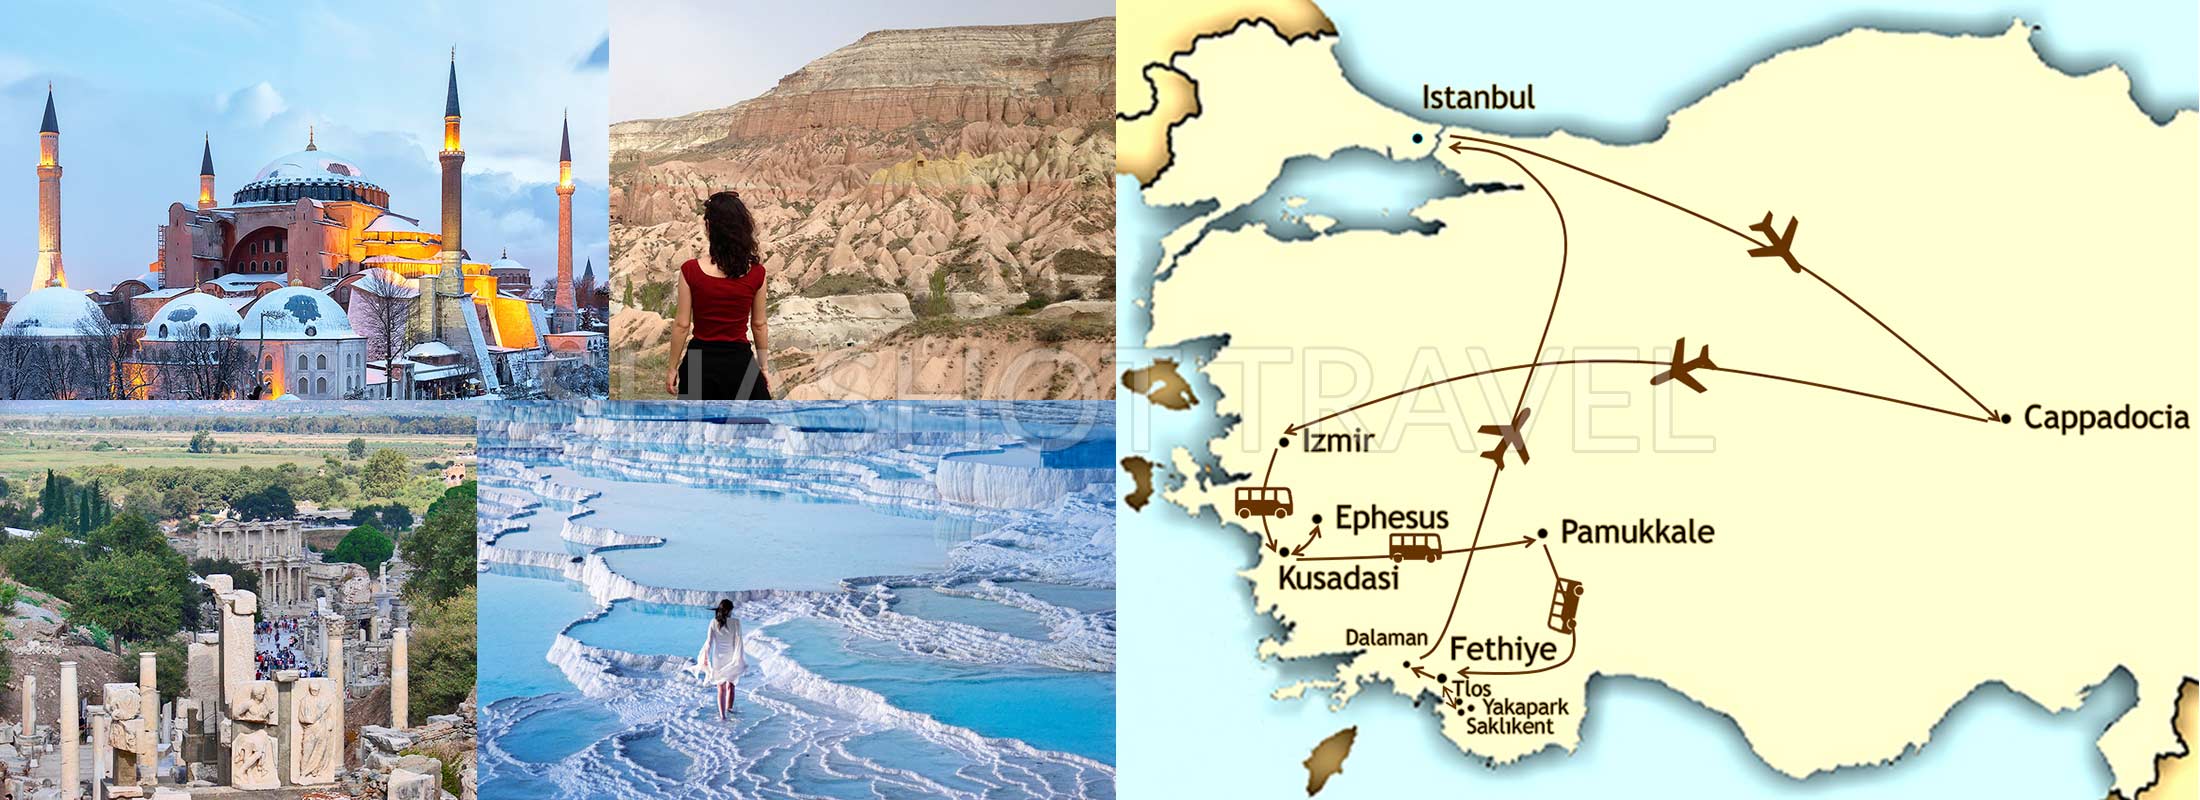 10-DAYS-TURKEY-PACKAGE-TOUR-ISTANBUL-BOSPHORUS-CAPPADOCIA-PAMUKKALE-EPHESUS-FETHIYE-BY-FLIGHT